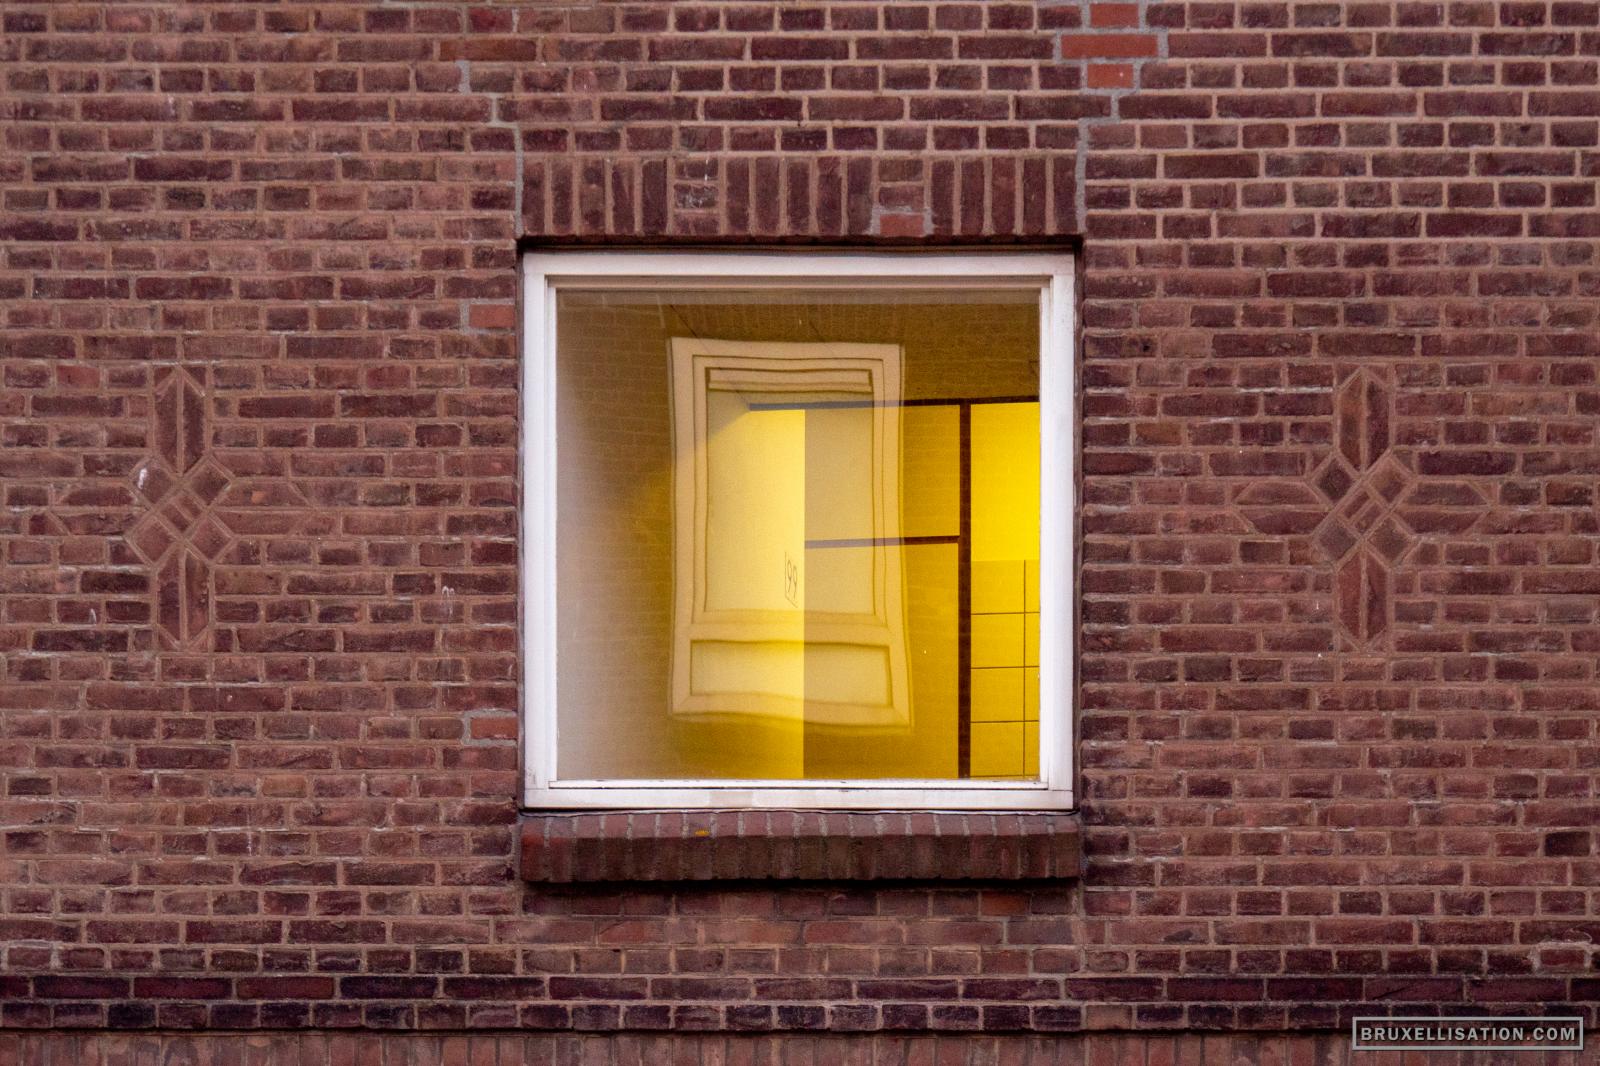 Frame the Frame - The Hague, Netherlands, April 2020